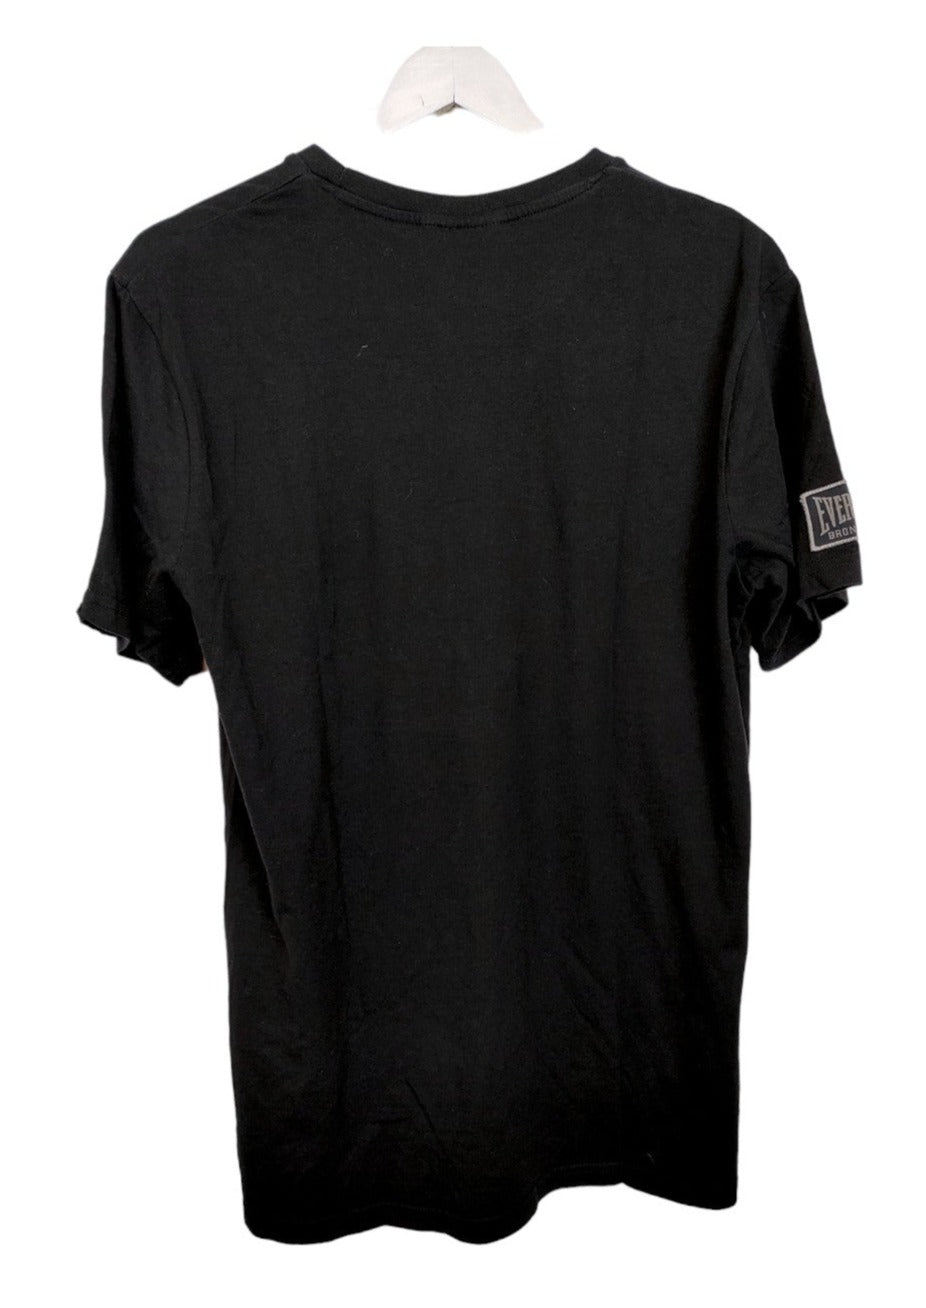 Ανδρική Μπλούζα - T- Shirt EVERLAST σε Μαύρο χρώμα (Medium)